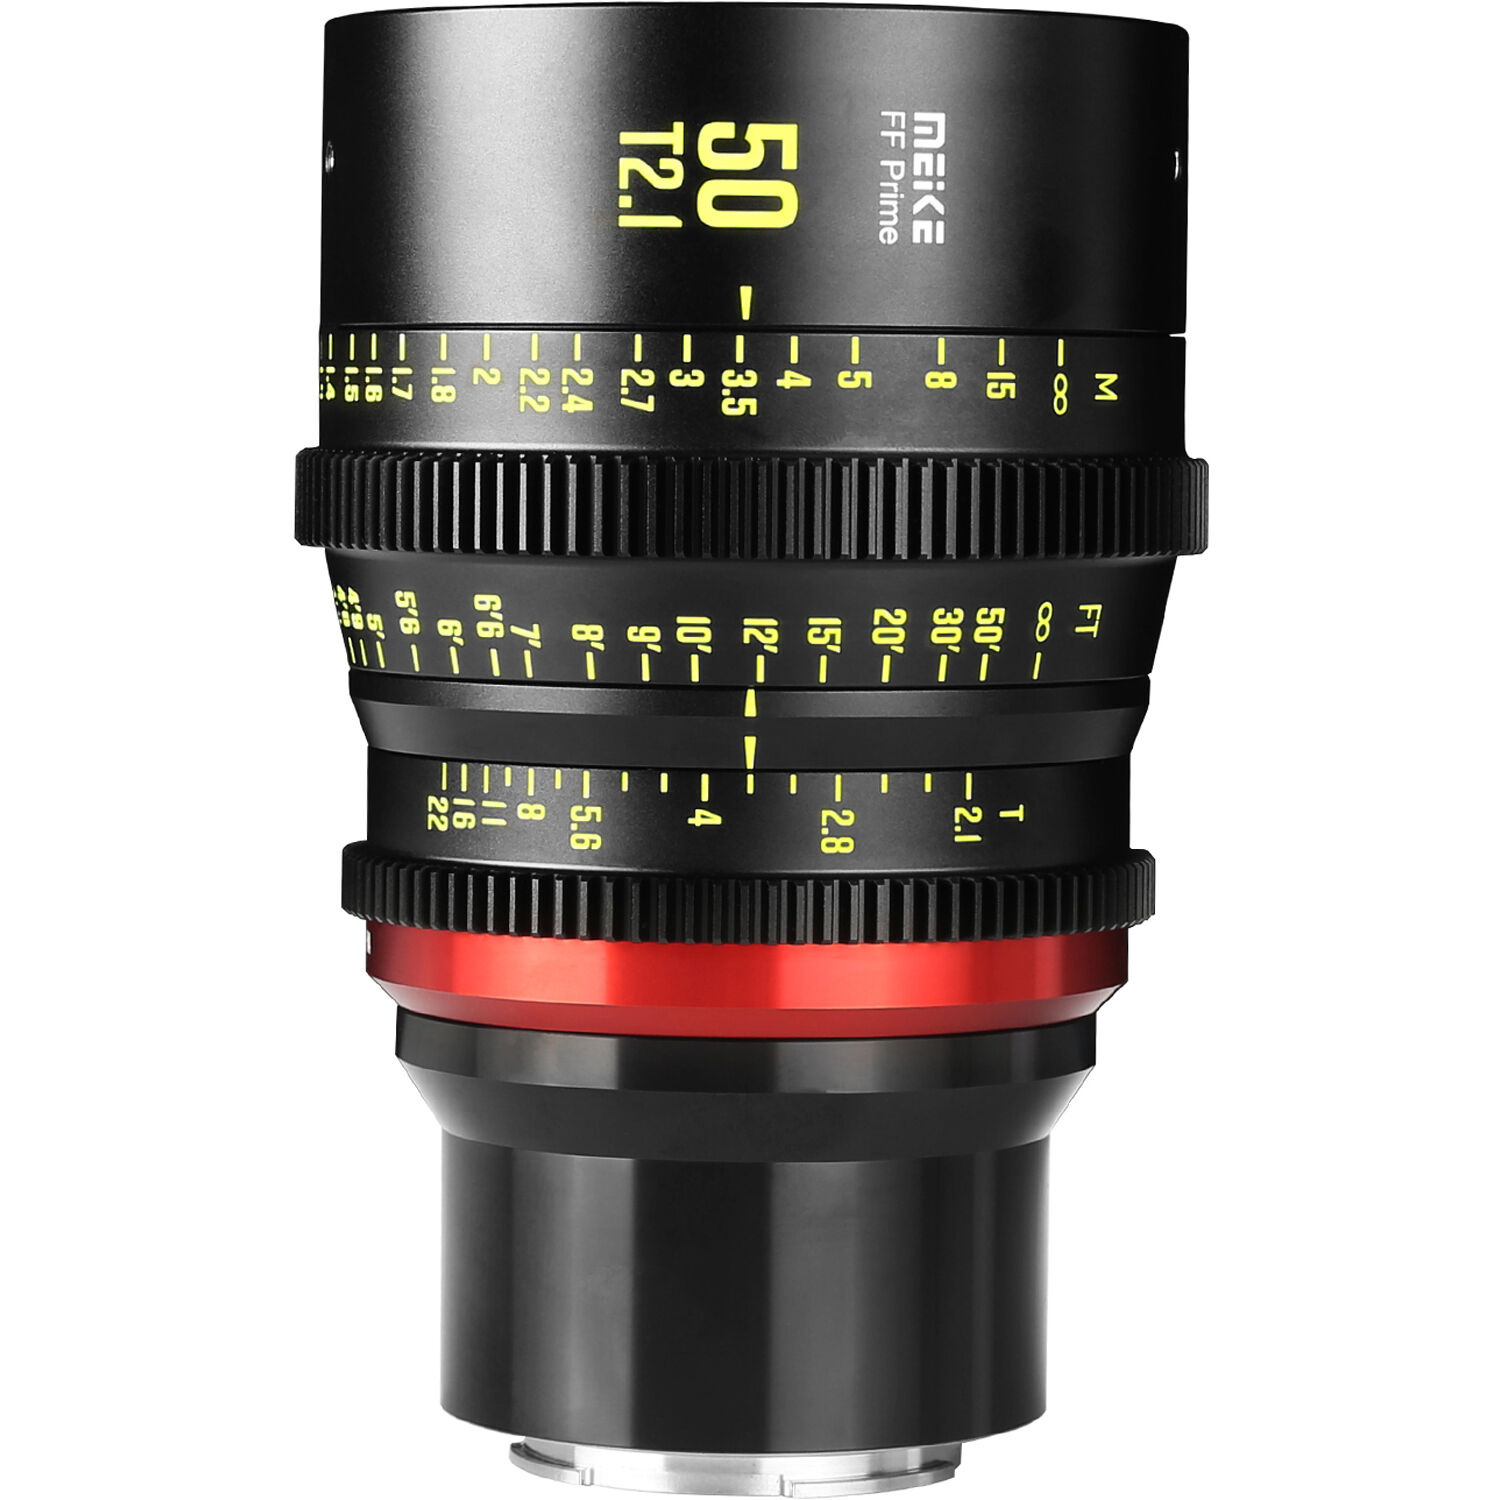 Meike 50mm T2.1 Full-Frame Prime Cine Lens (E-Mount)